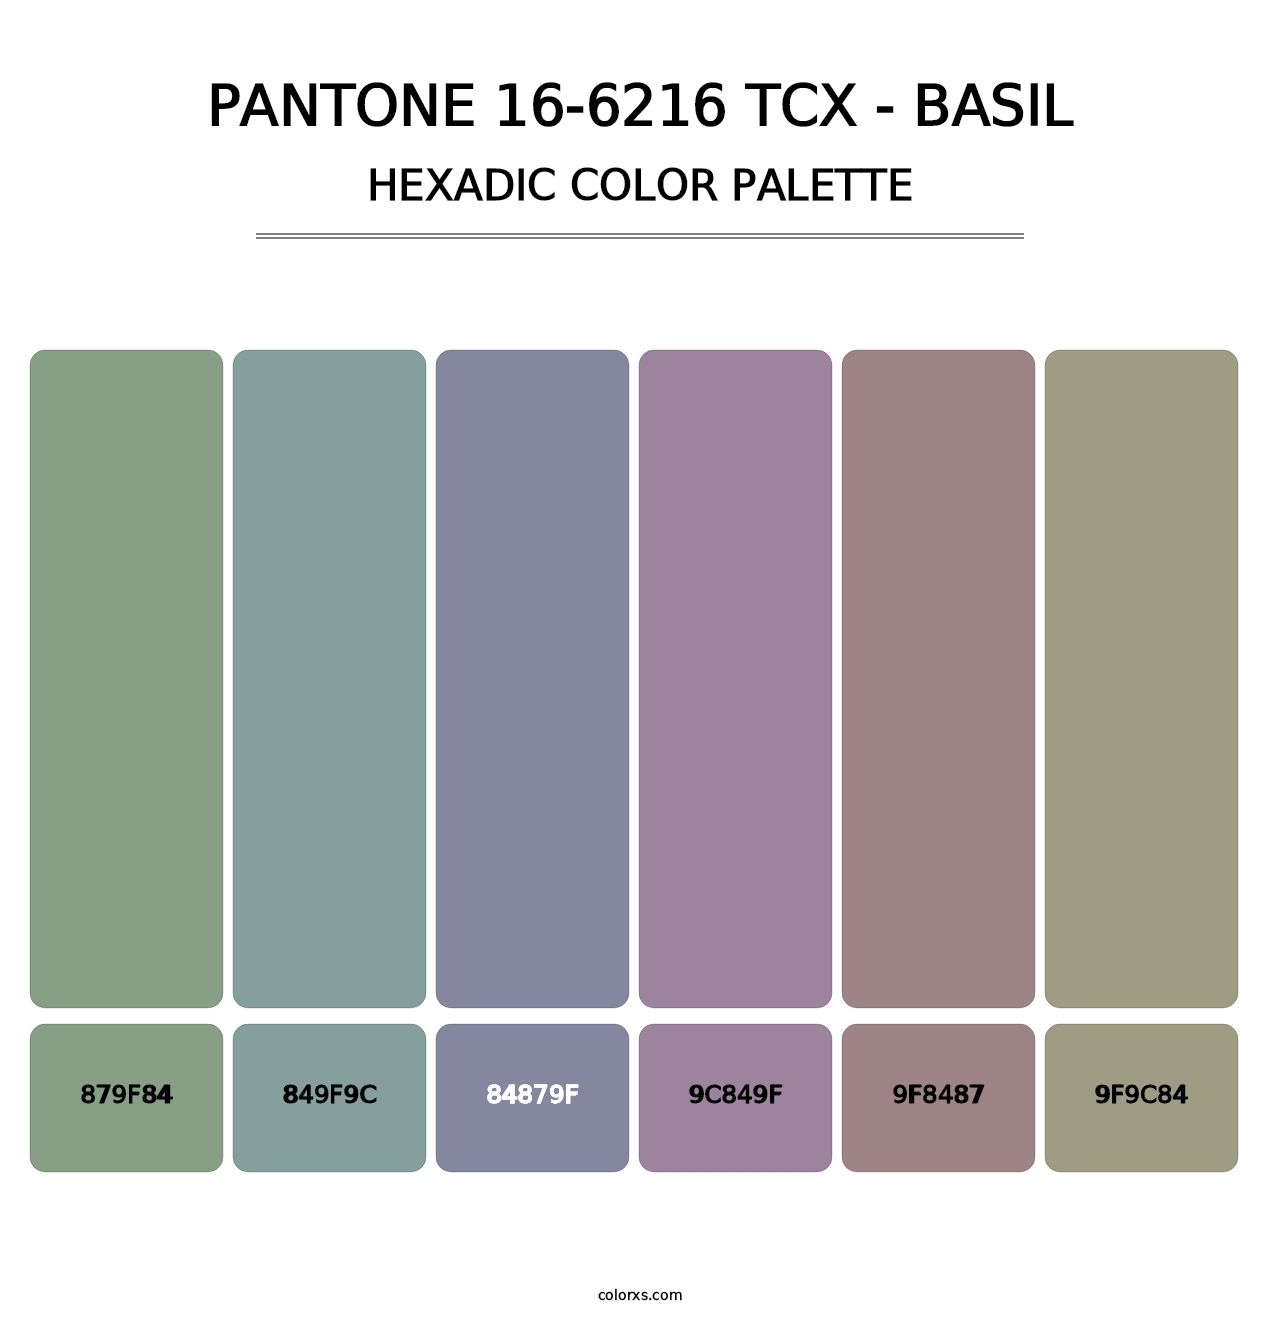 PANTONE 16-6216 TCX - Basil - Hexadic Color Palette